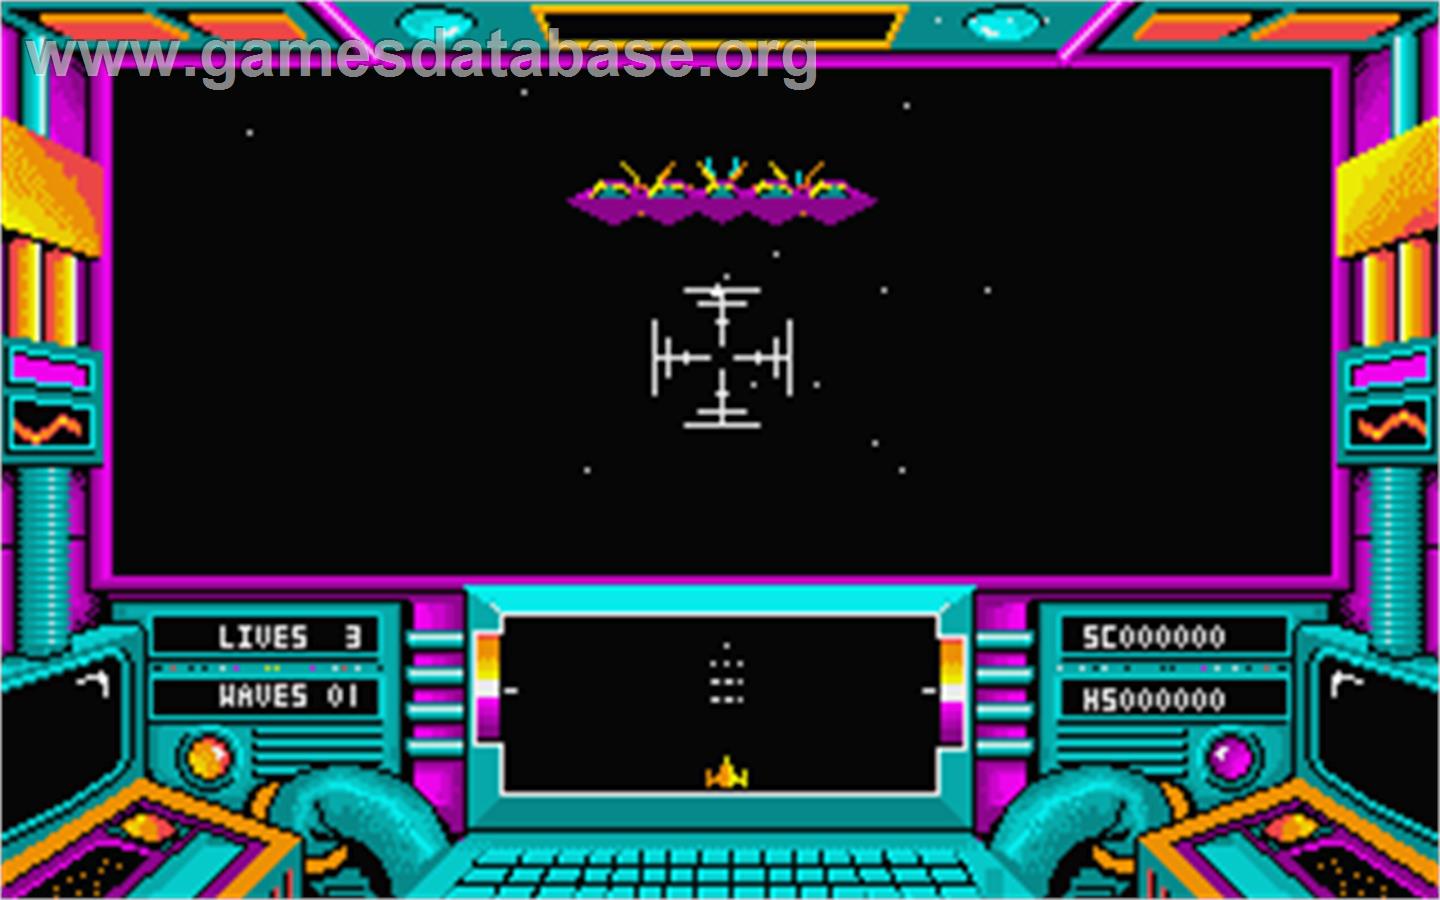 Damocles: Mercenary 2 - Atari ST - Artwork - In Game